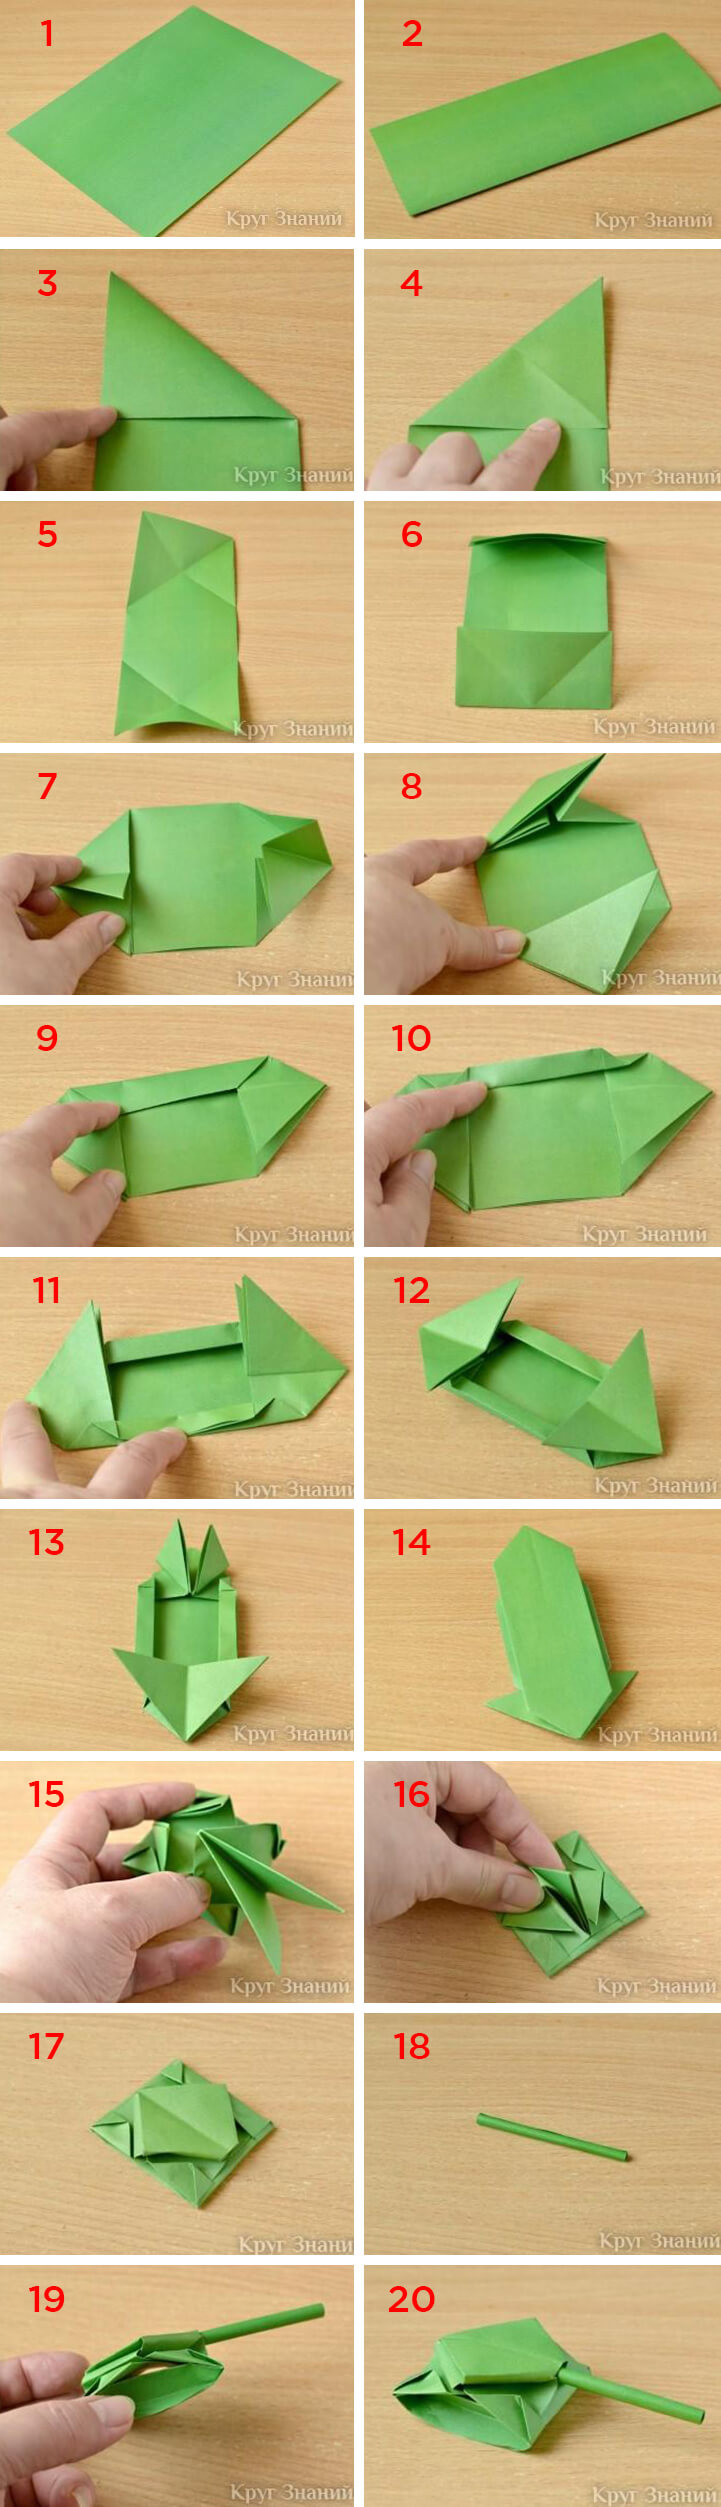 Схема как сделать танк из бумаги